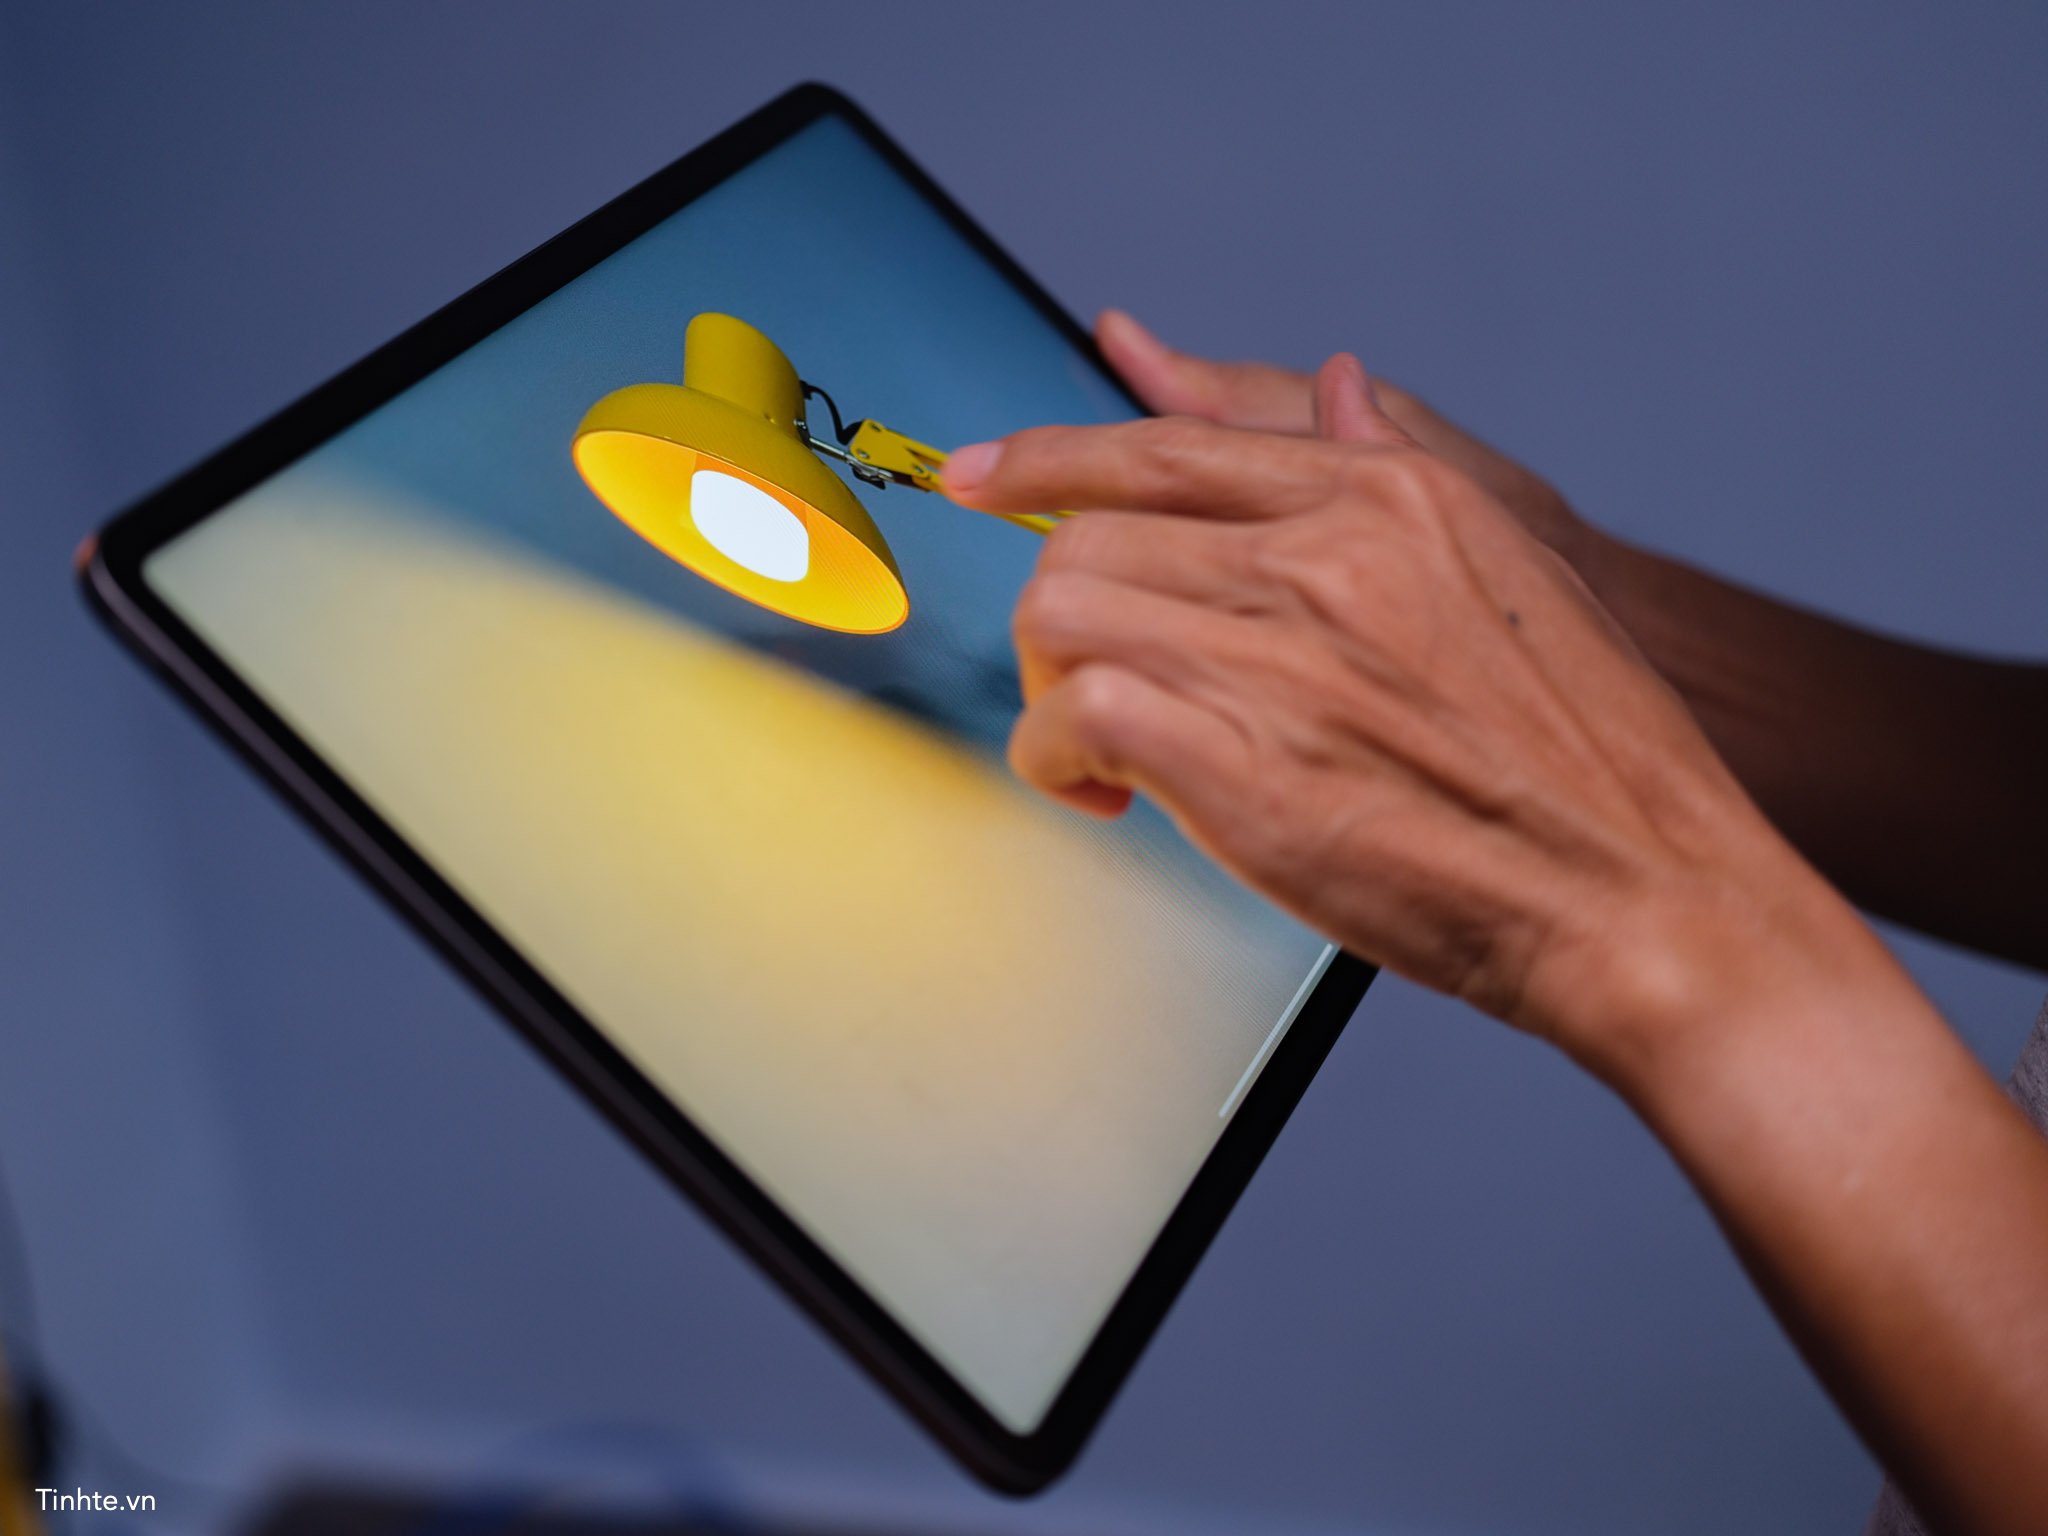 iPad Pro mới được cho là sẽ sử dụng công nghệ màn hình OLED 2 lớp, vậy nó là gì?